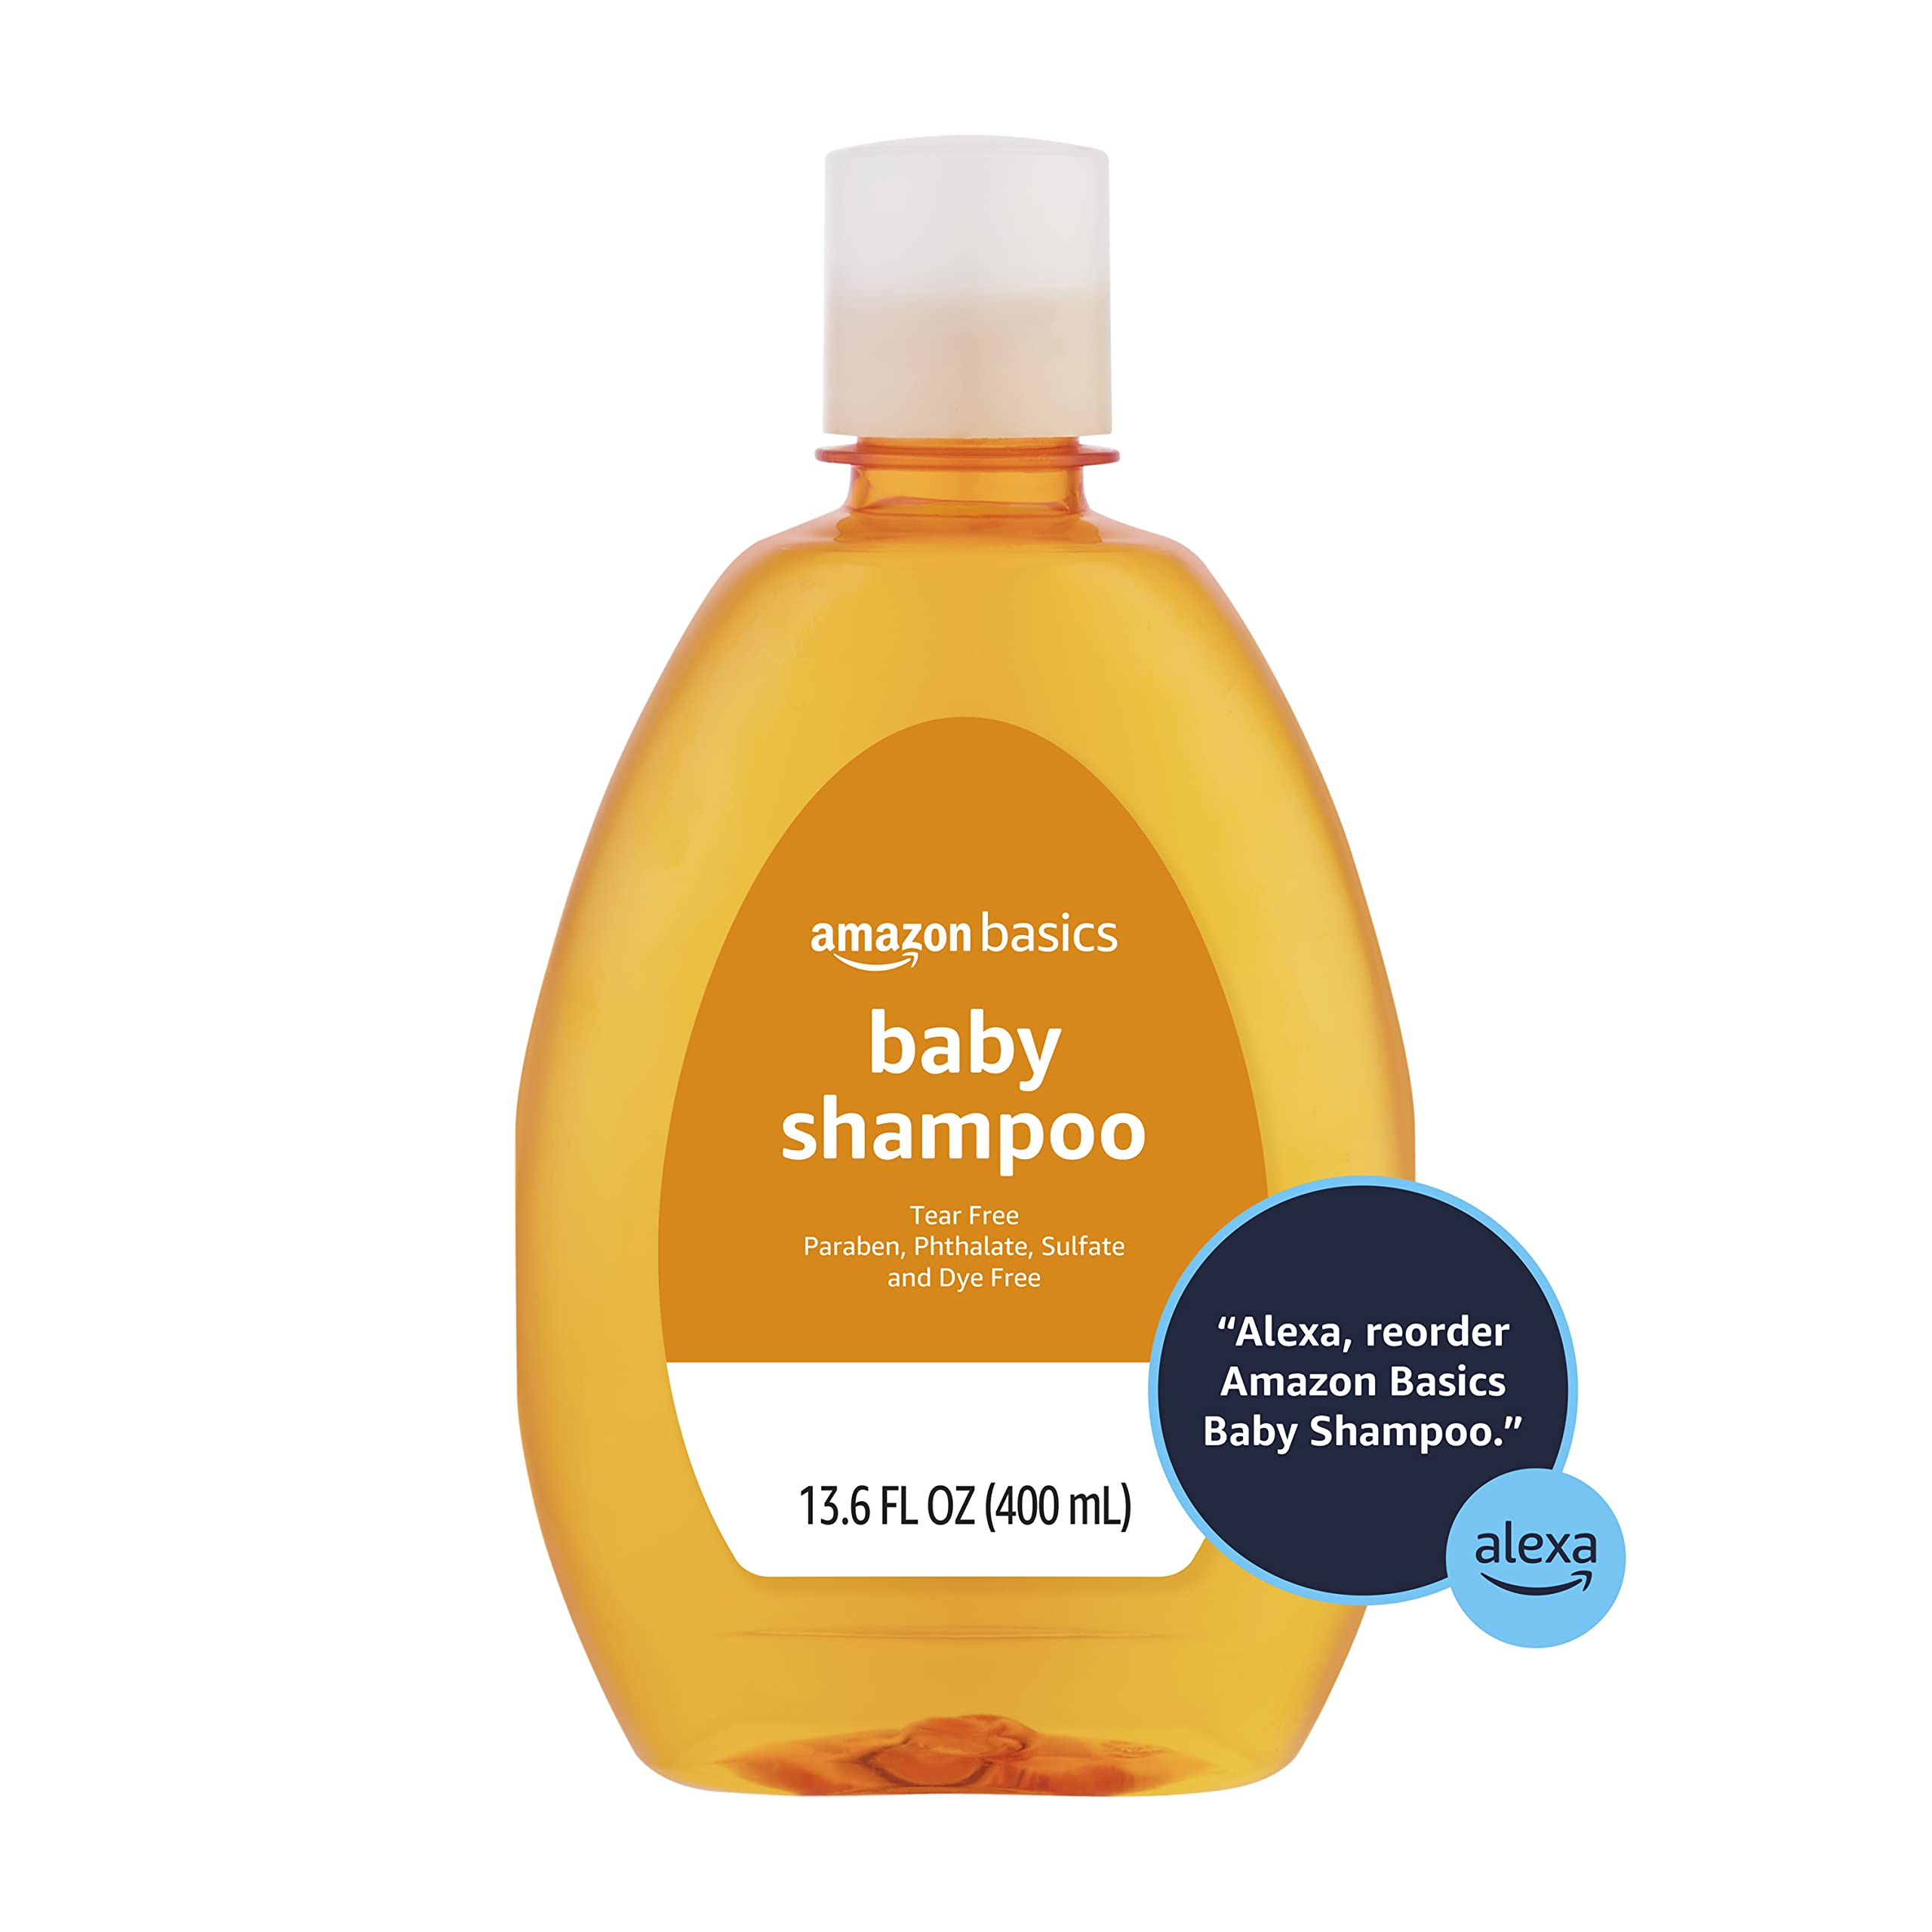 Amazon Basics Tear-Free Baby Shampoo, 13.6 Fluid Ounce $2.68